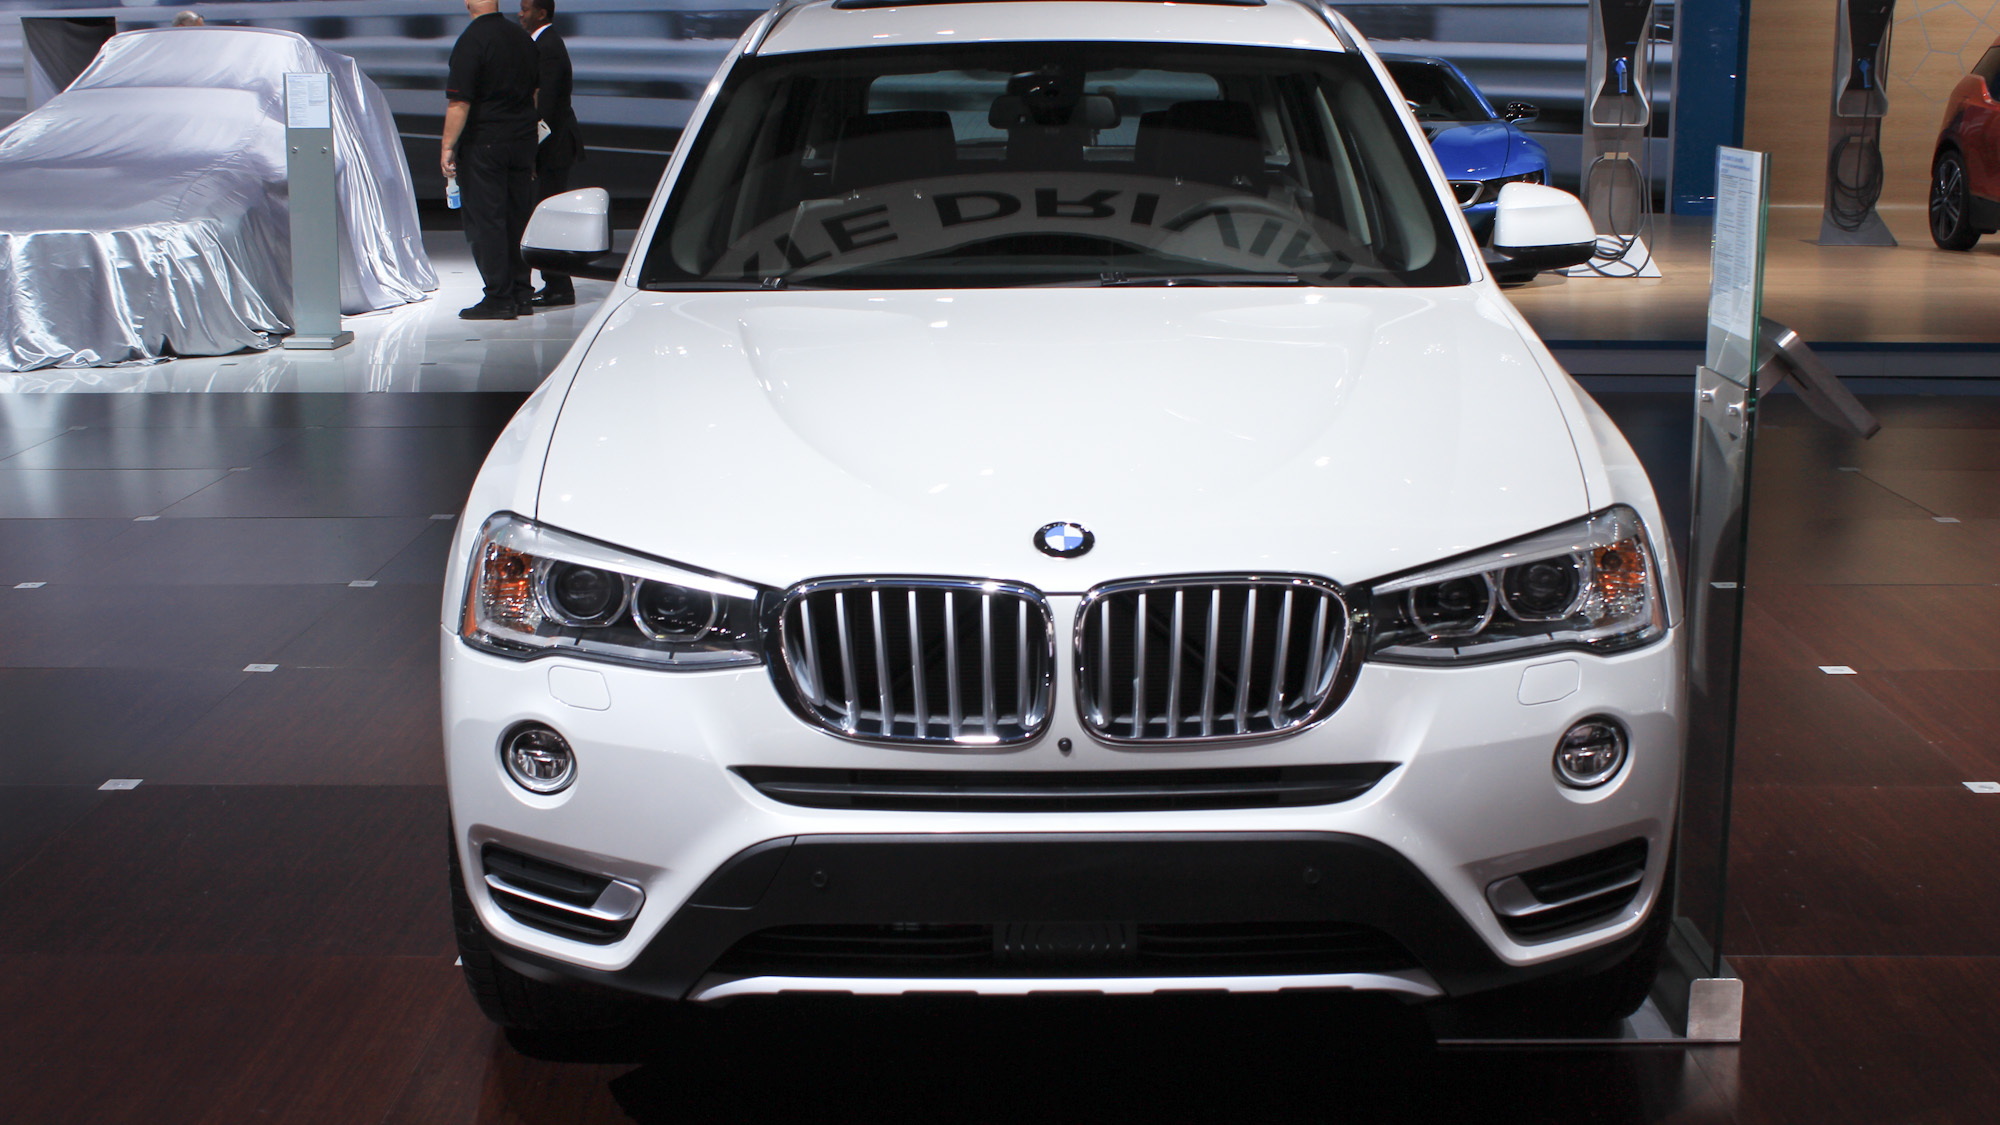 2015 BMW X3 xDrive 28d, 2014 New York Auto Show